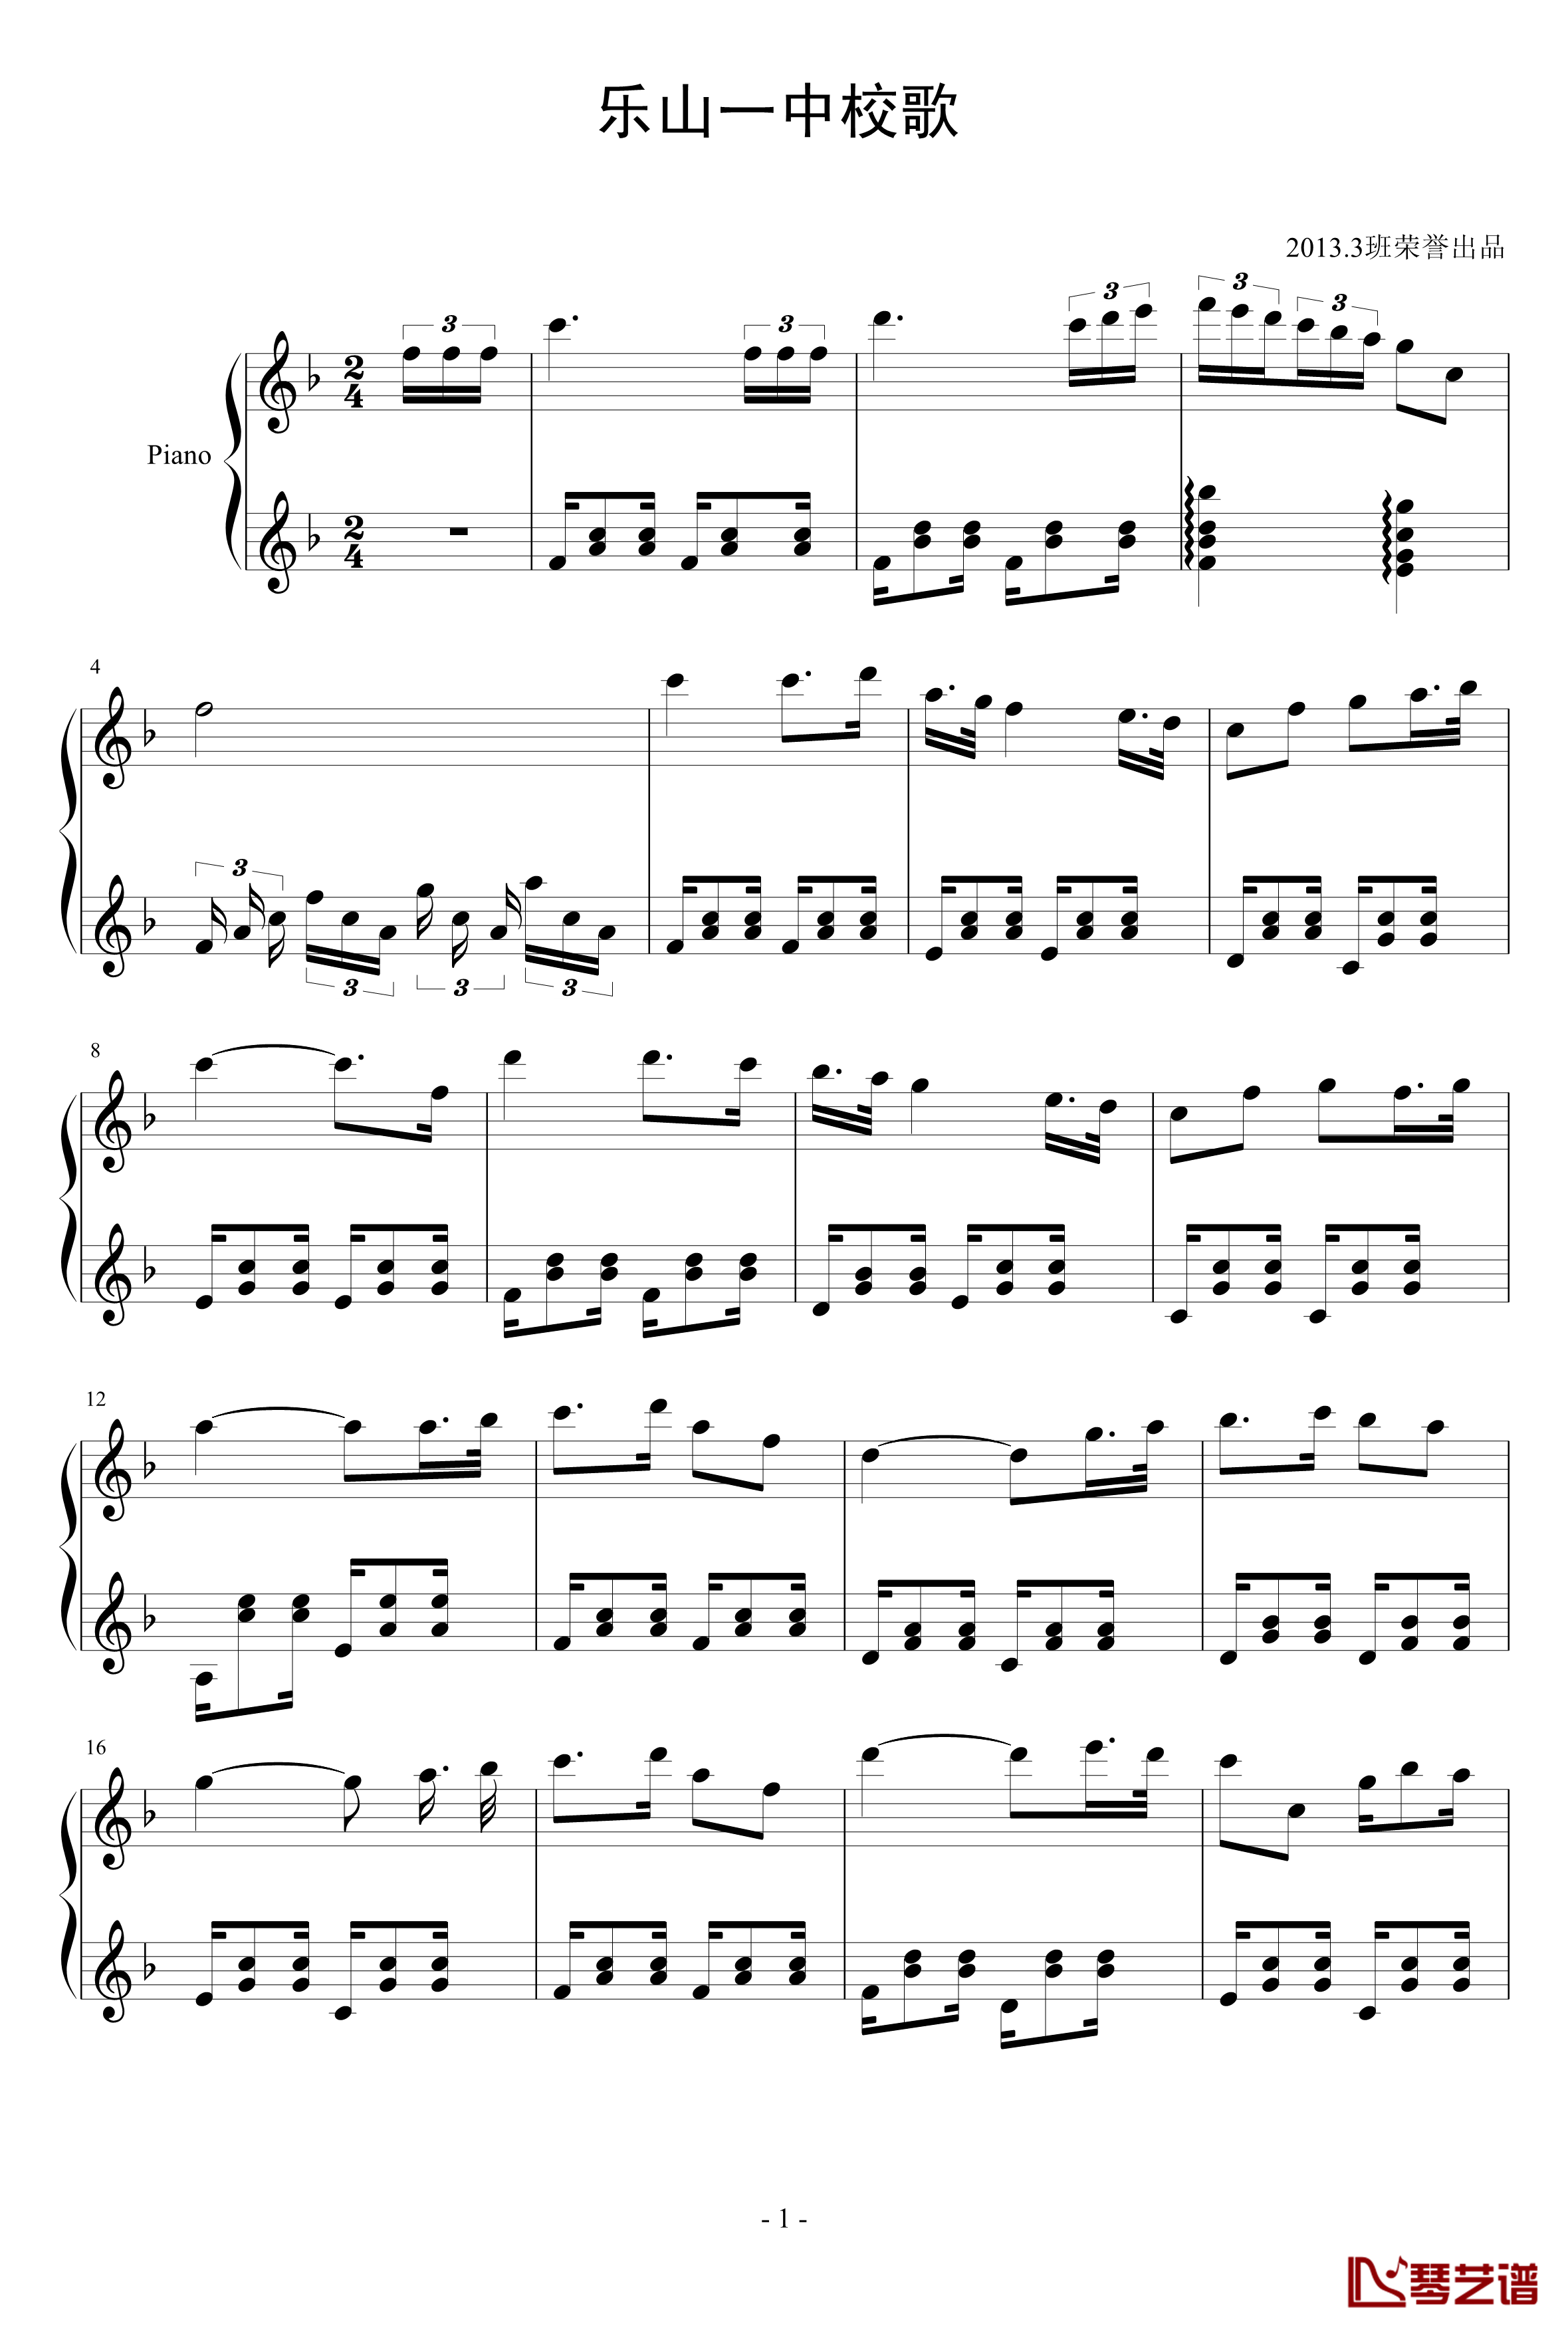 乐山一中校歌钢琴谱-非正式版1